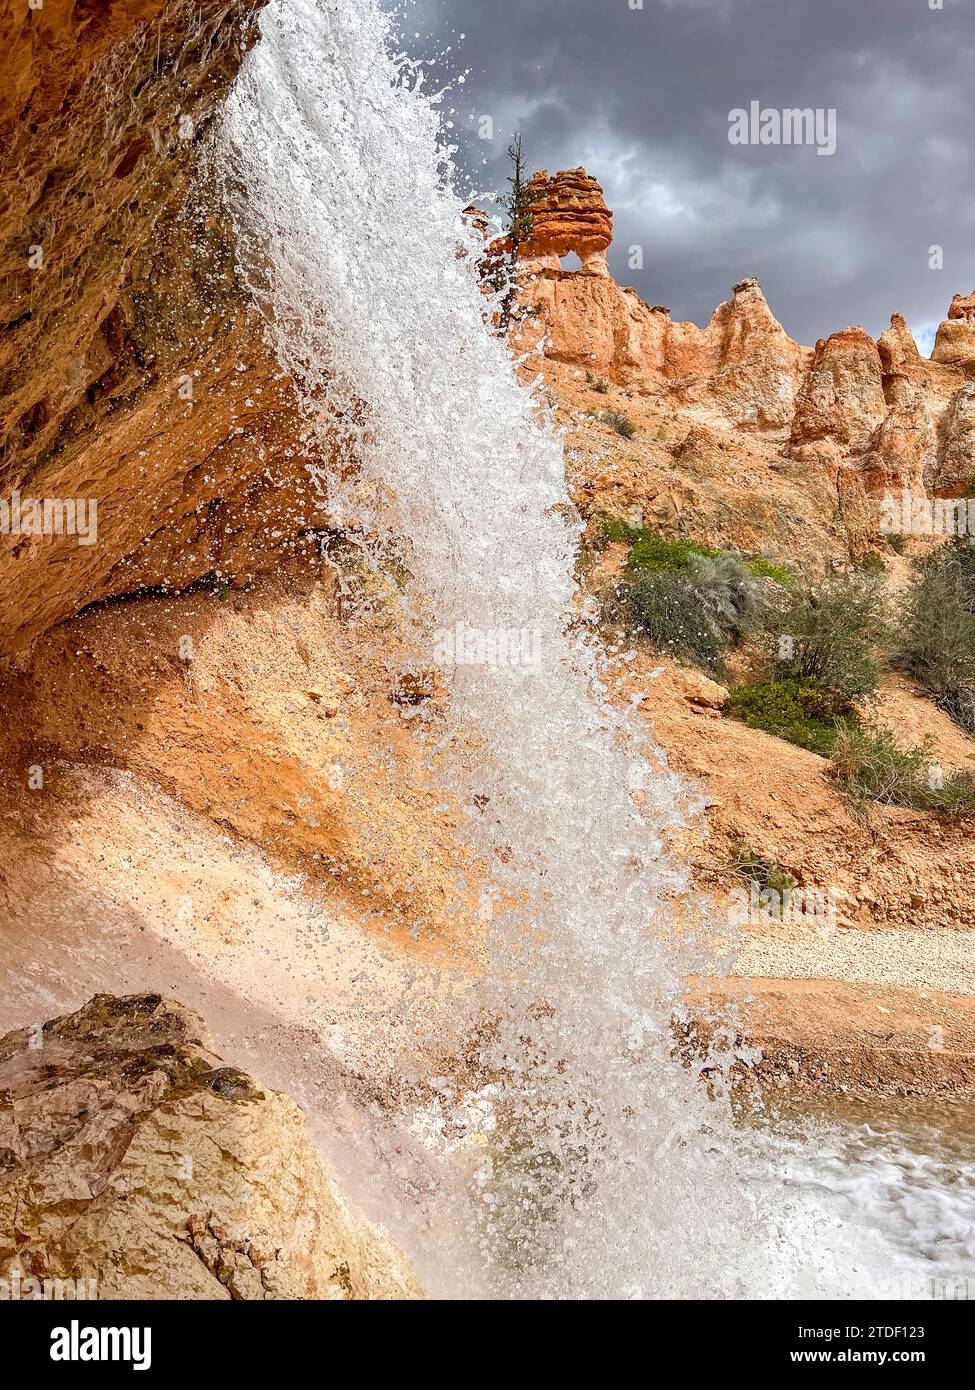 Chute d'eau traversant le Mossy Cave Trail dans le parc national de Bryce Canyon, Utah, États-Unis d'Amérique, Amérique du Nord Banque D'Images